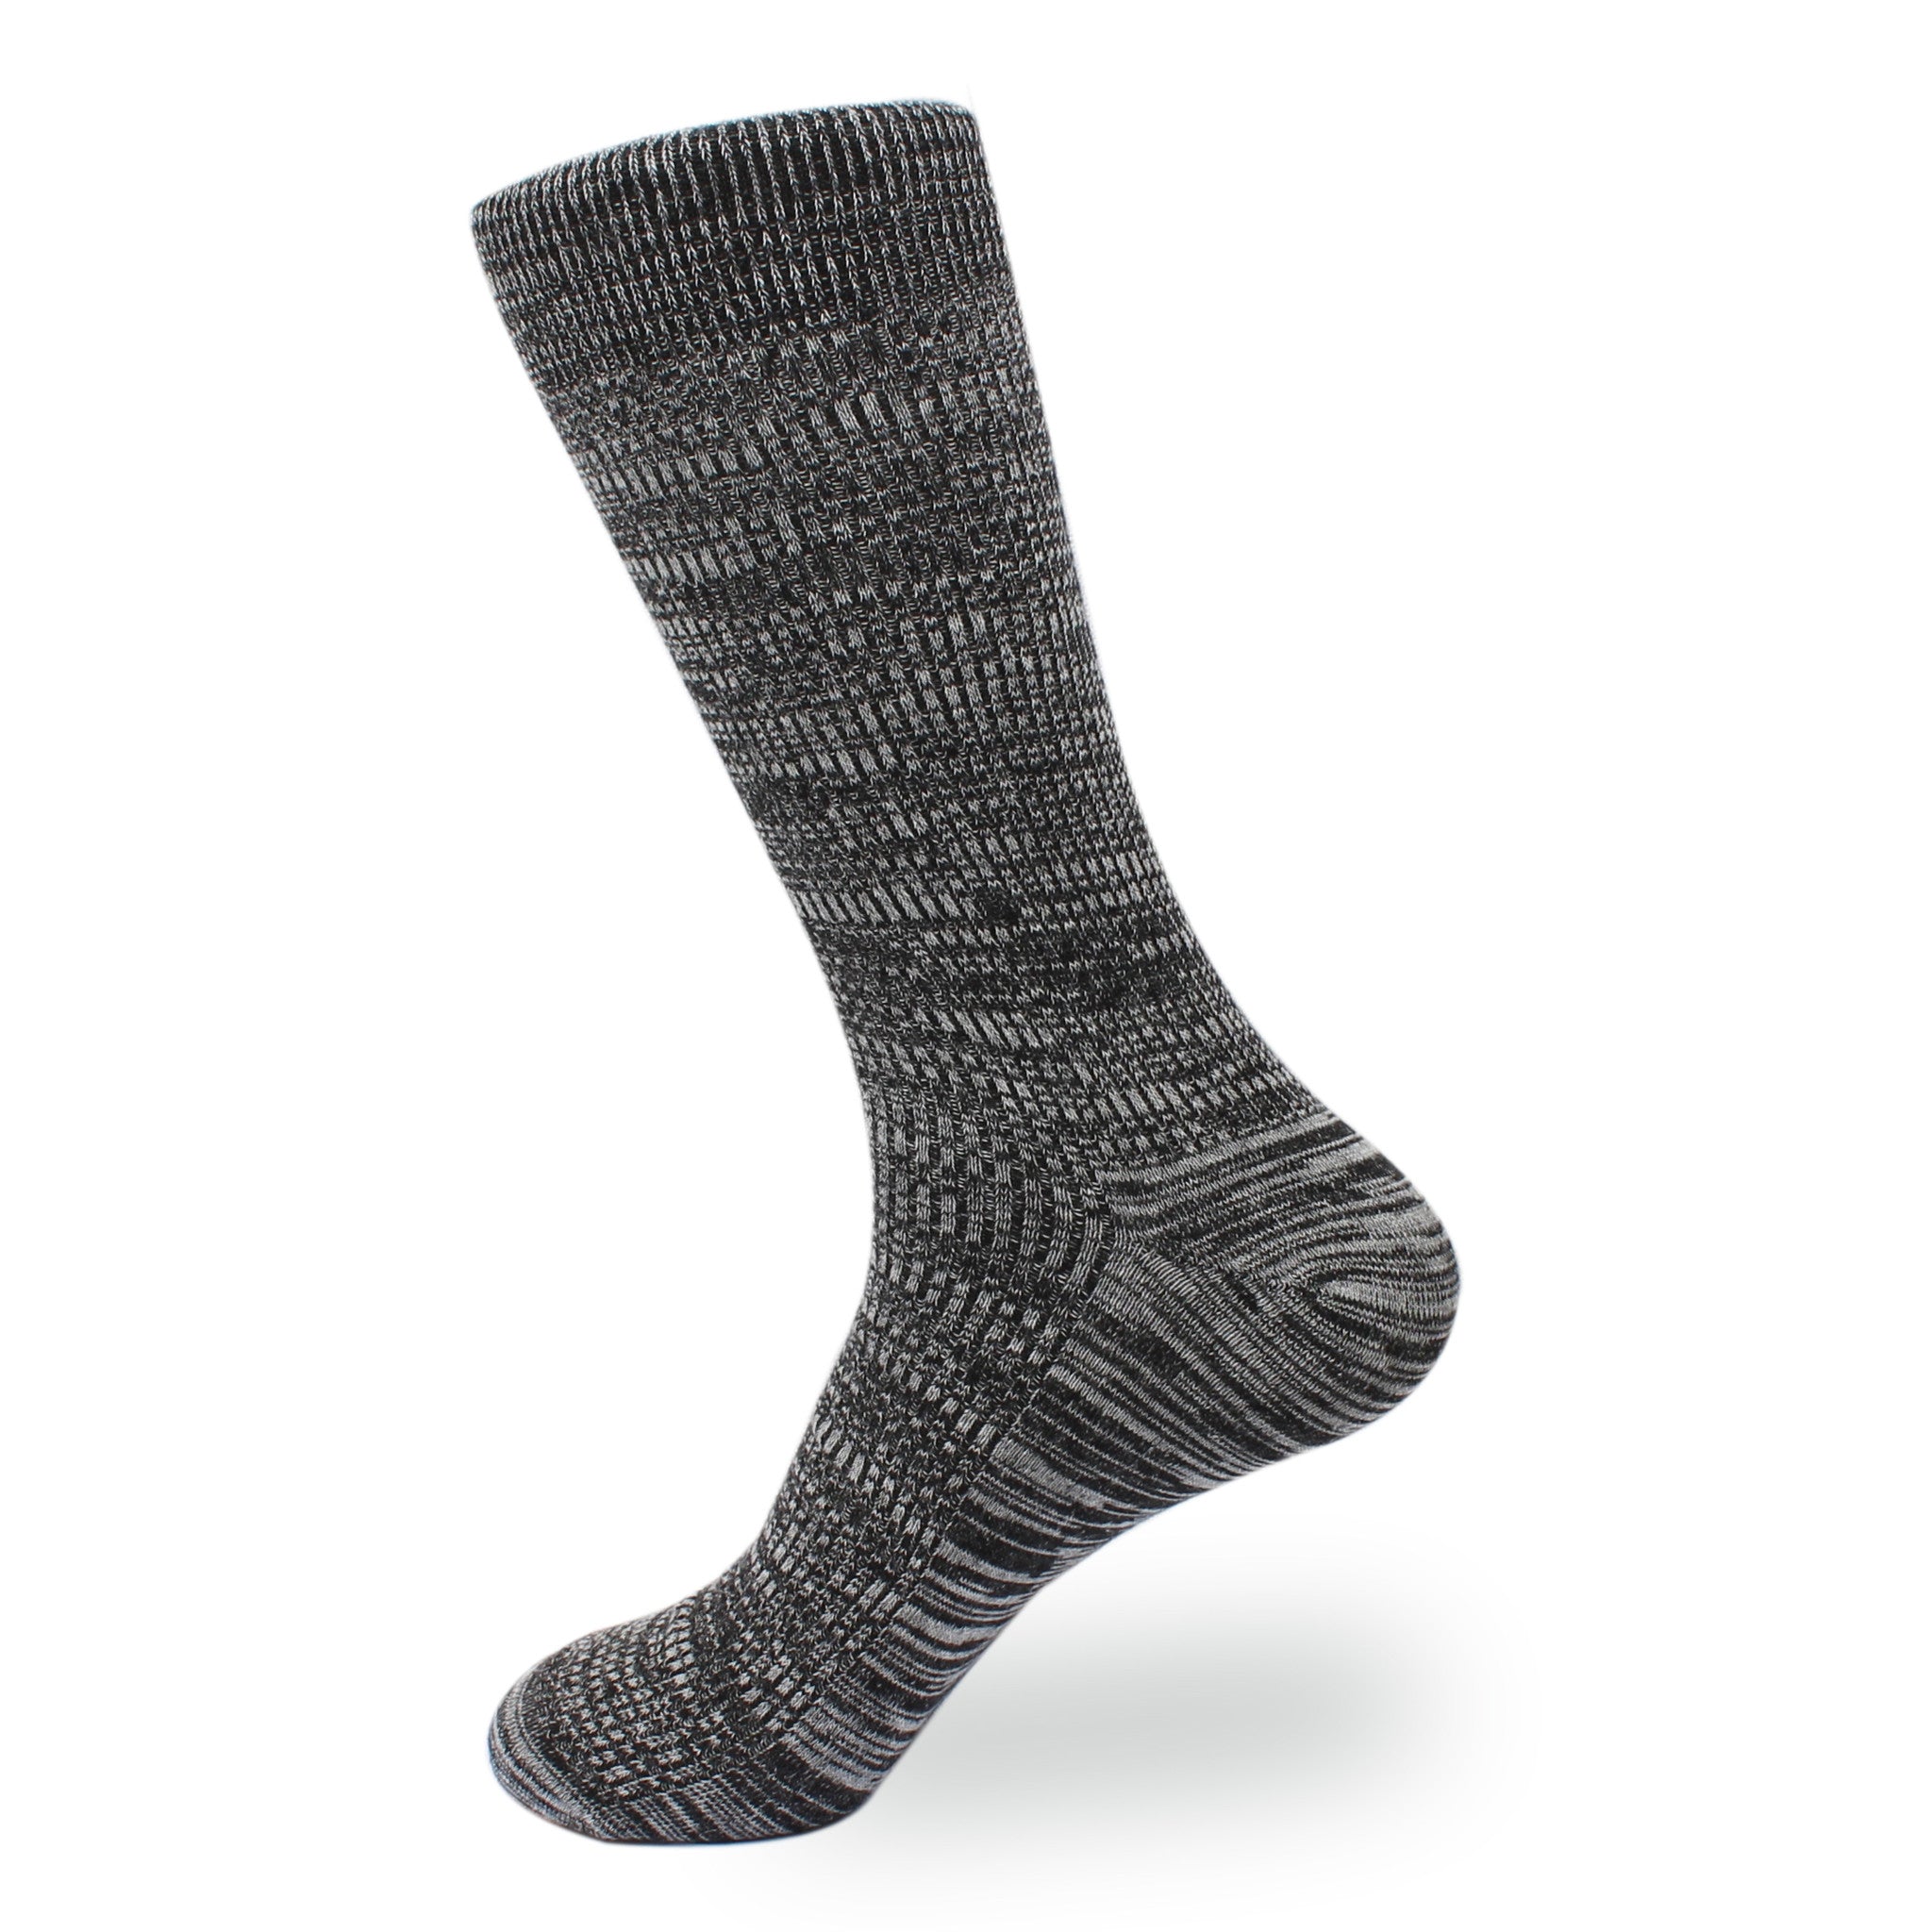 Black & White Cotton-Blend Socks